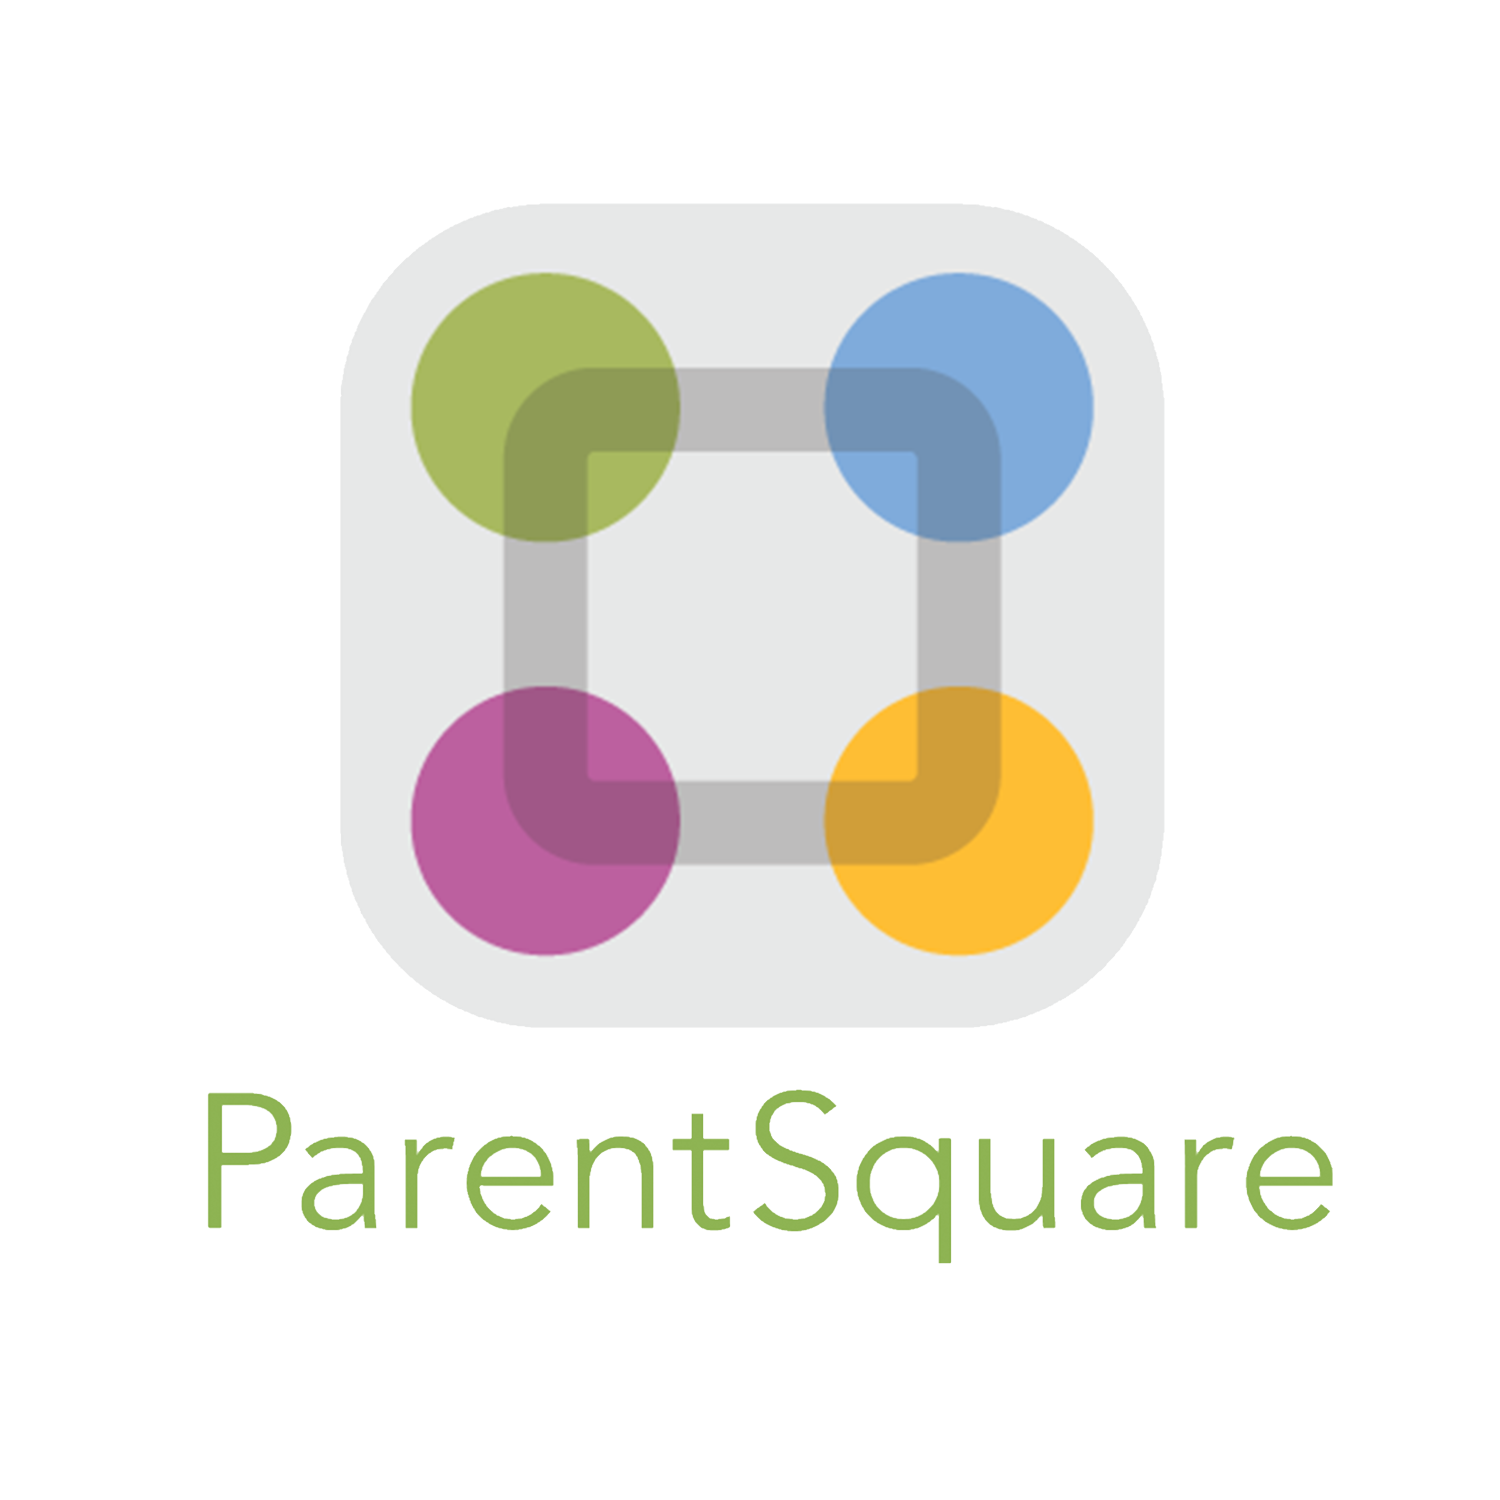 ParentSquare FAQ for Parents Spanish Image